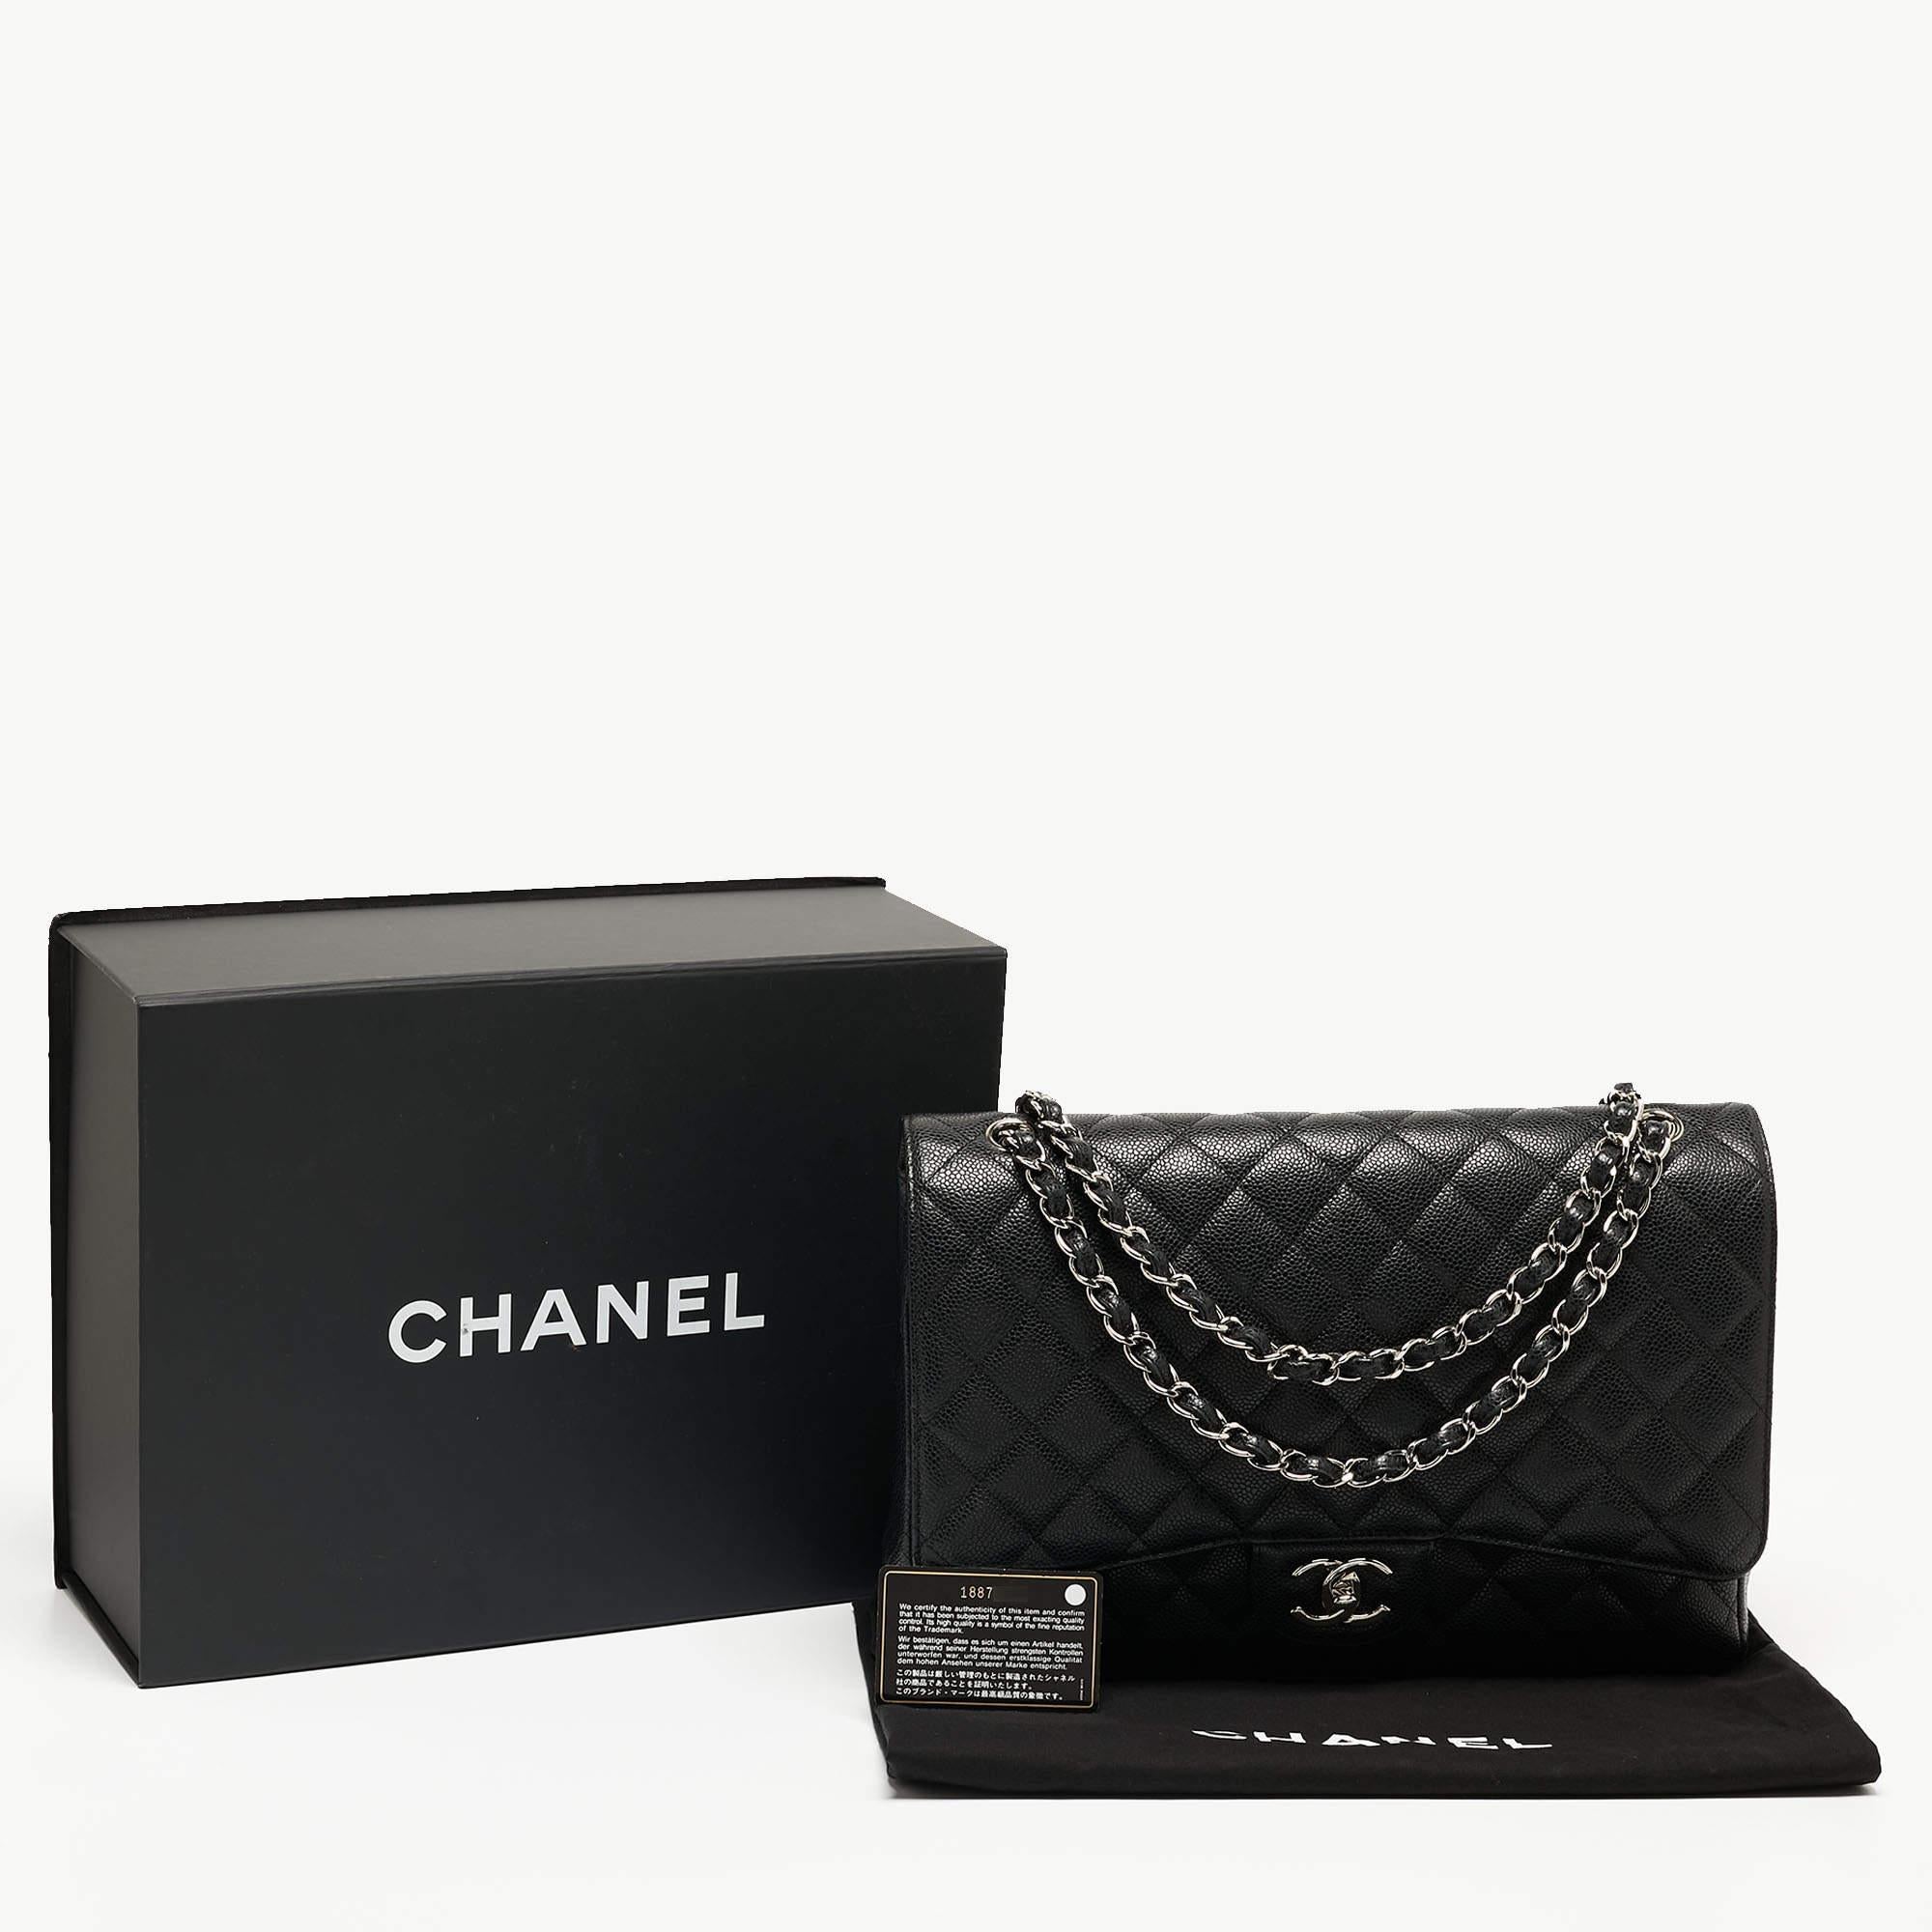 Chanel - Sac à double rabat classique Maxi en cuir texturé noir matelassé 14